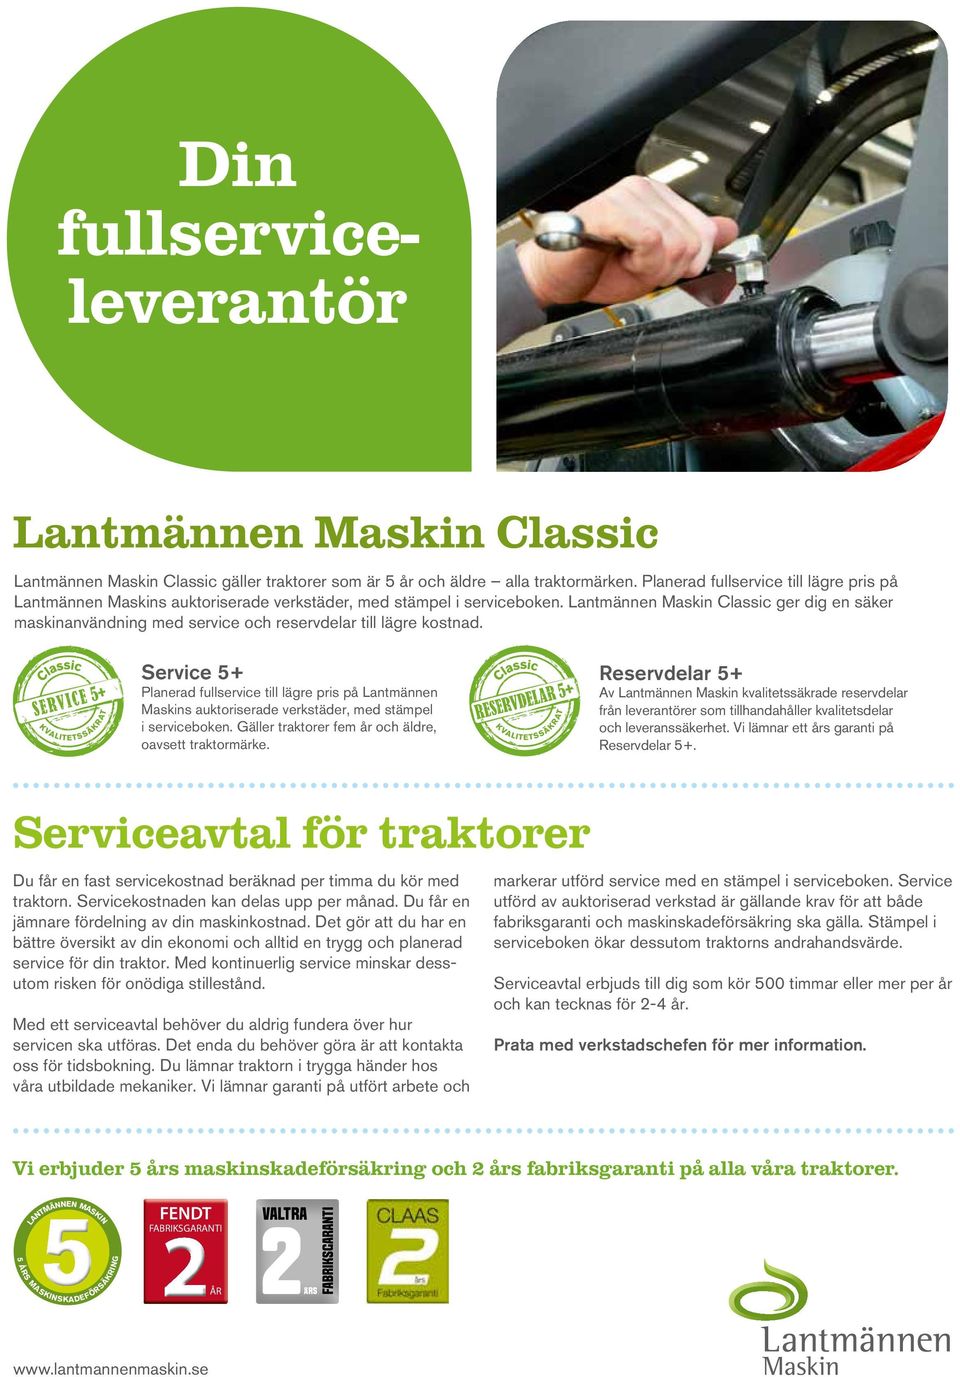 Lantmännen Maskin Classic ger dig en säker maskinanvändning med service och reservdelar till lägre kostnad. Service 5+  Gäller traktorer fem år och äldre, oavsett traktormärke.